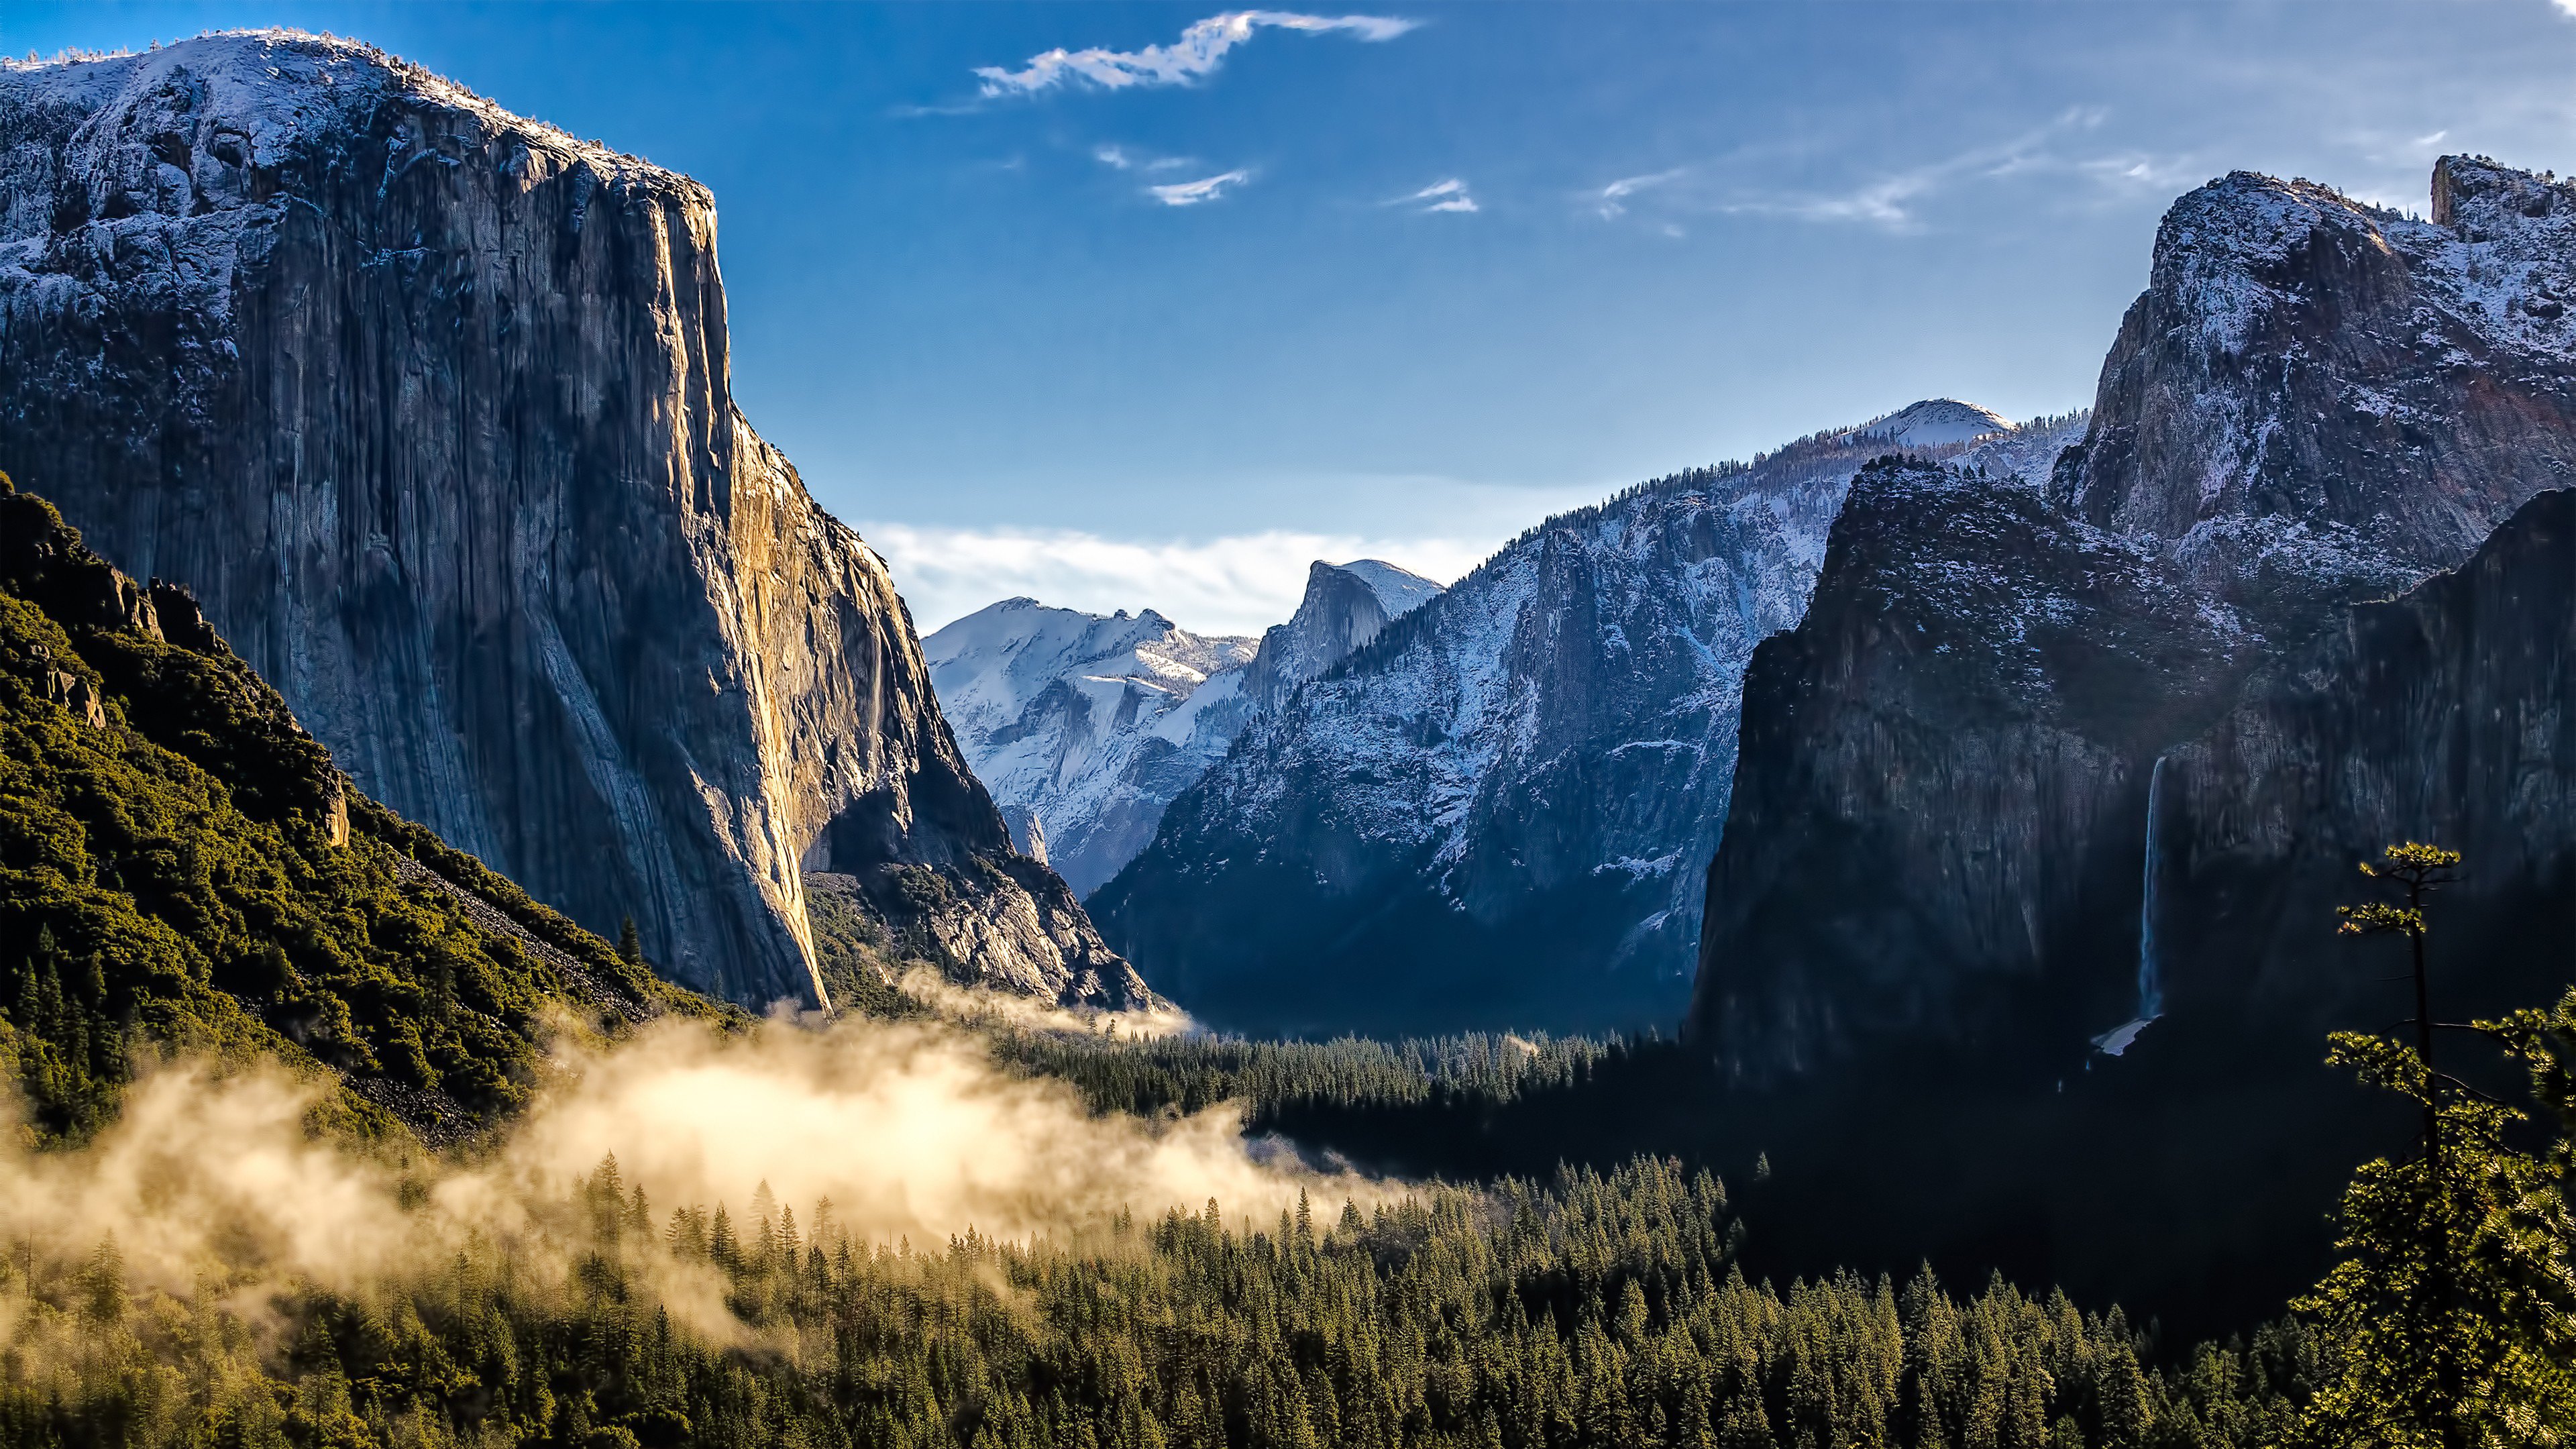 Thung lũng Yosemite ở công viên quốc gia Yosemite là một trong những địa điểm đẹp nhất thế giới. Hãy để hình nền 4K của nó truyền cảm hứng cho bạn với khung cảnh đẹp tuyệt vời và màu sắc tươi sáng. Hãy tận hưởng vẻ đẹp một cách thư giãn.